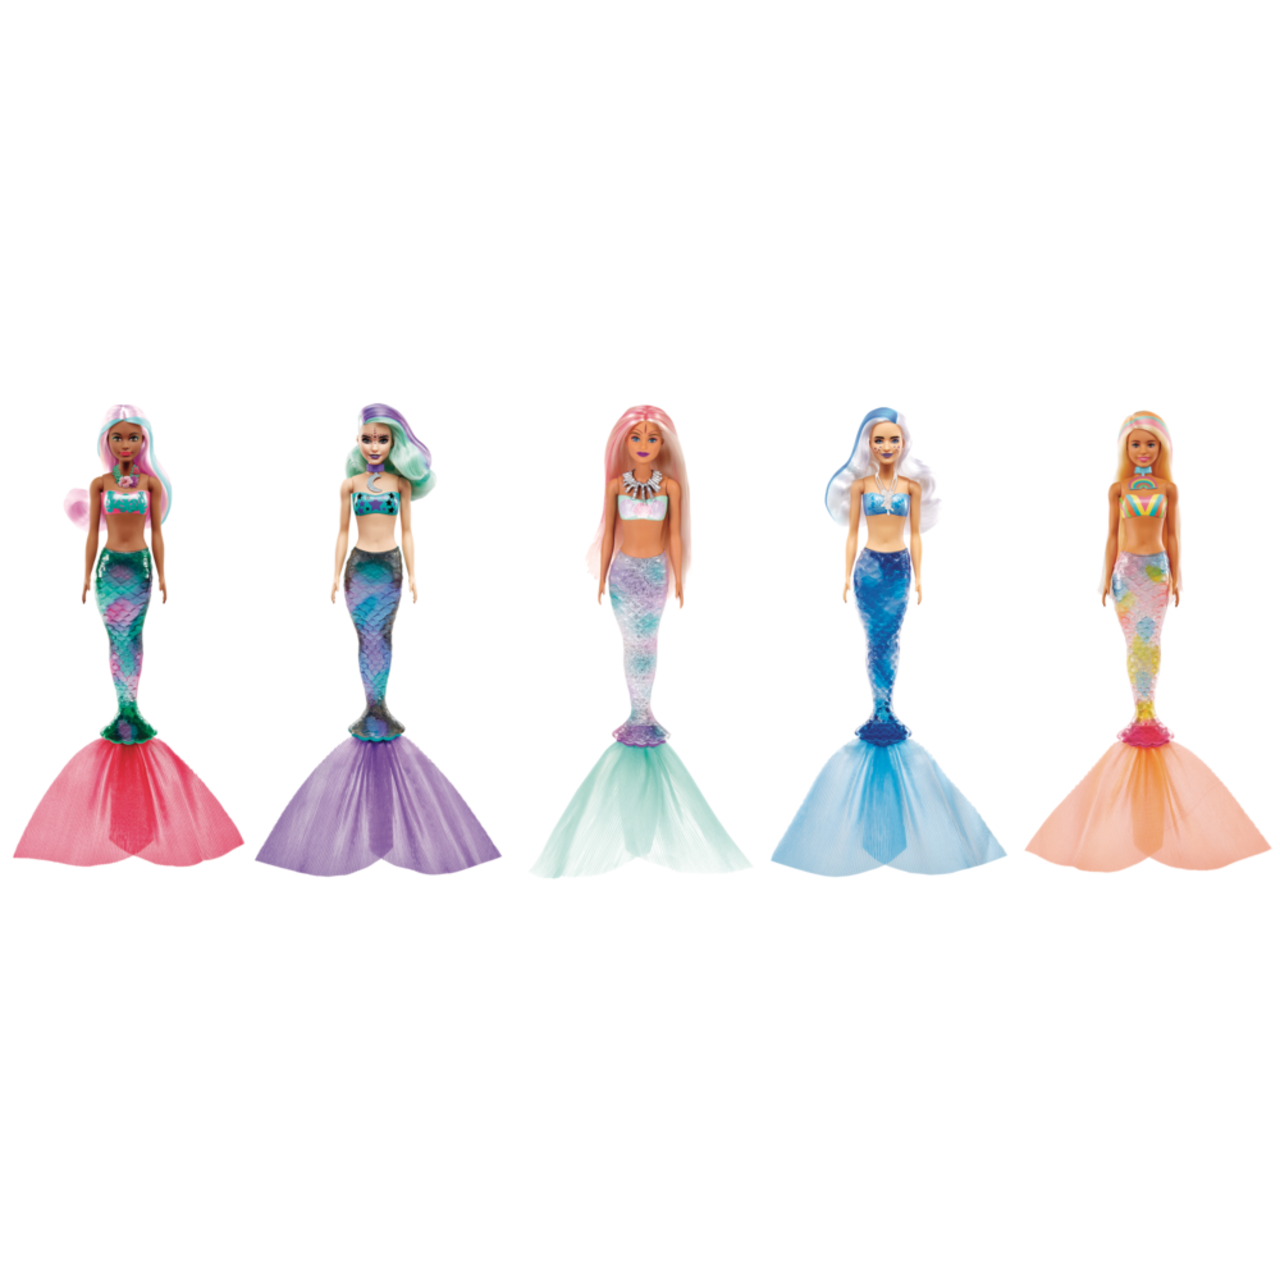 Unboxing Barbie Color Reveal - Série Sirènes 